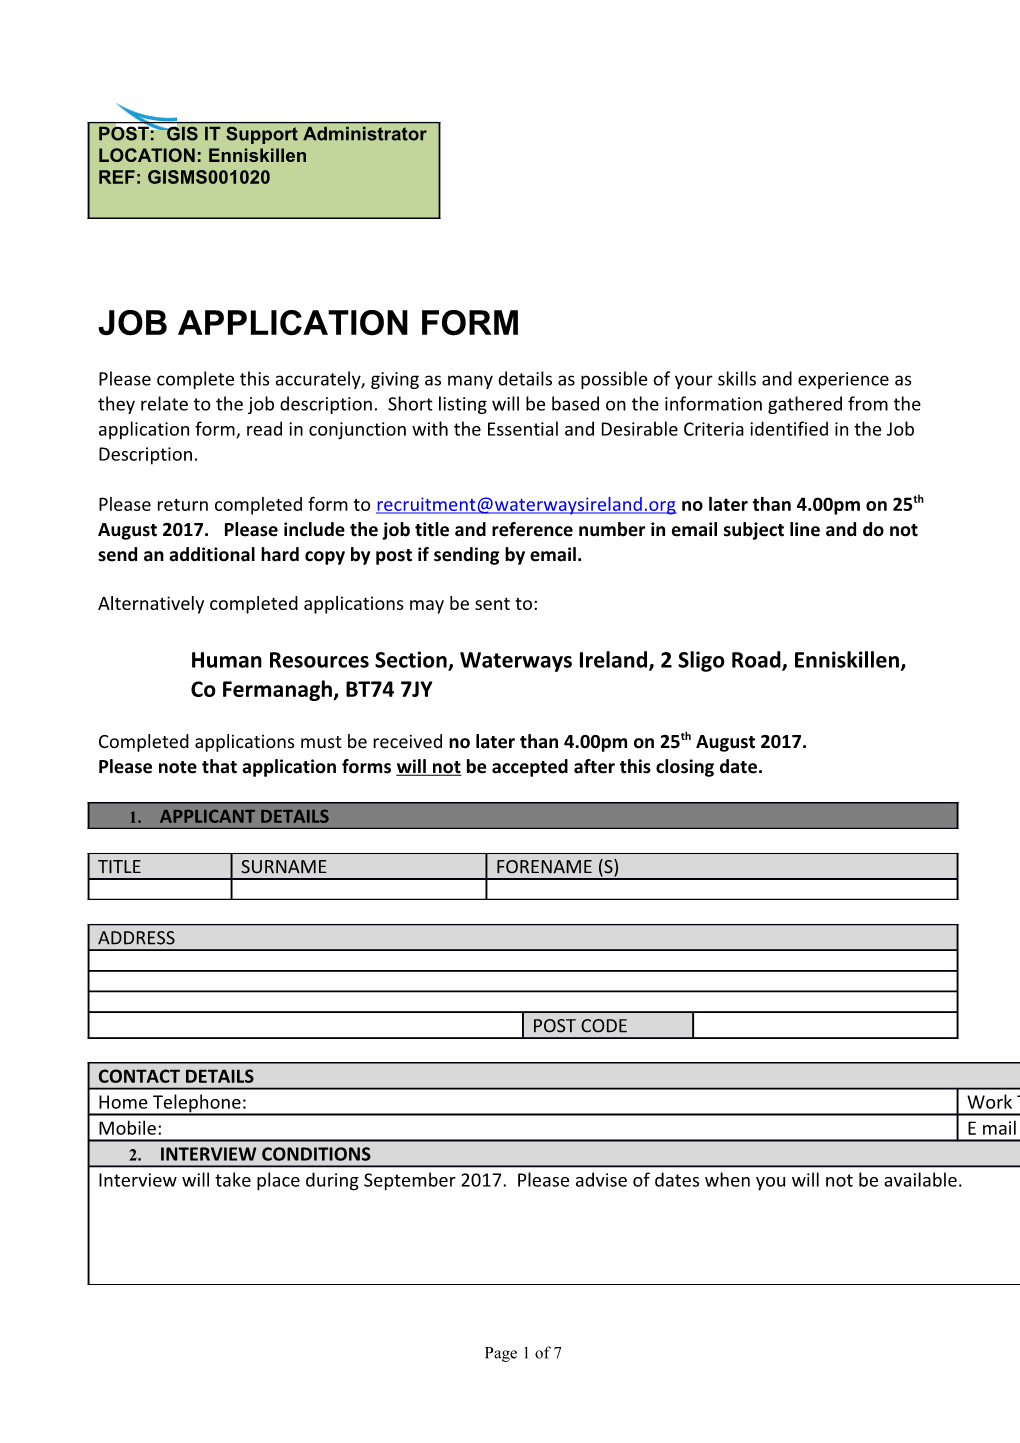 Job Application Form s10